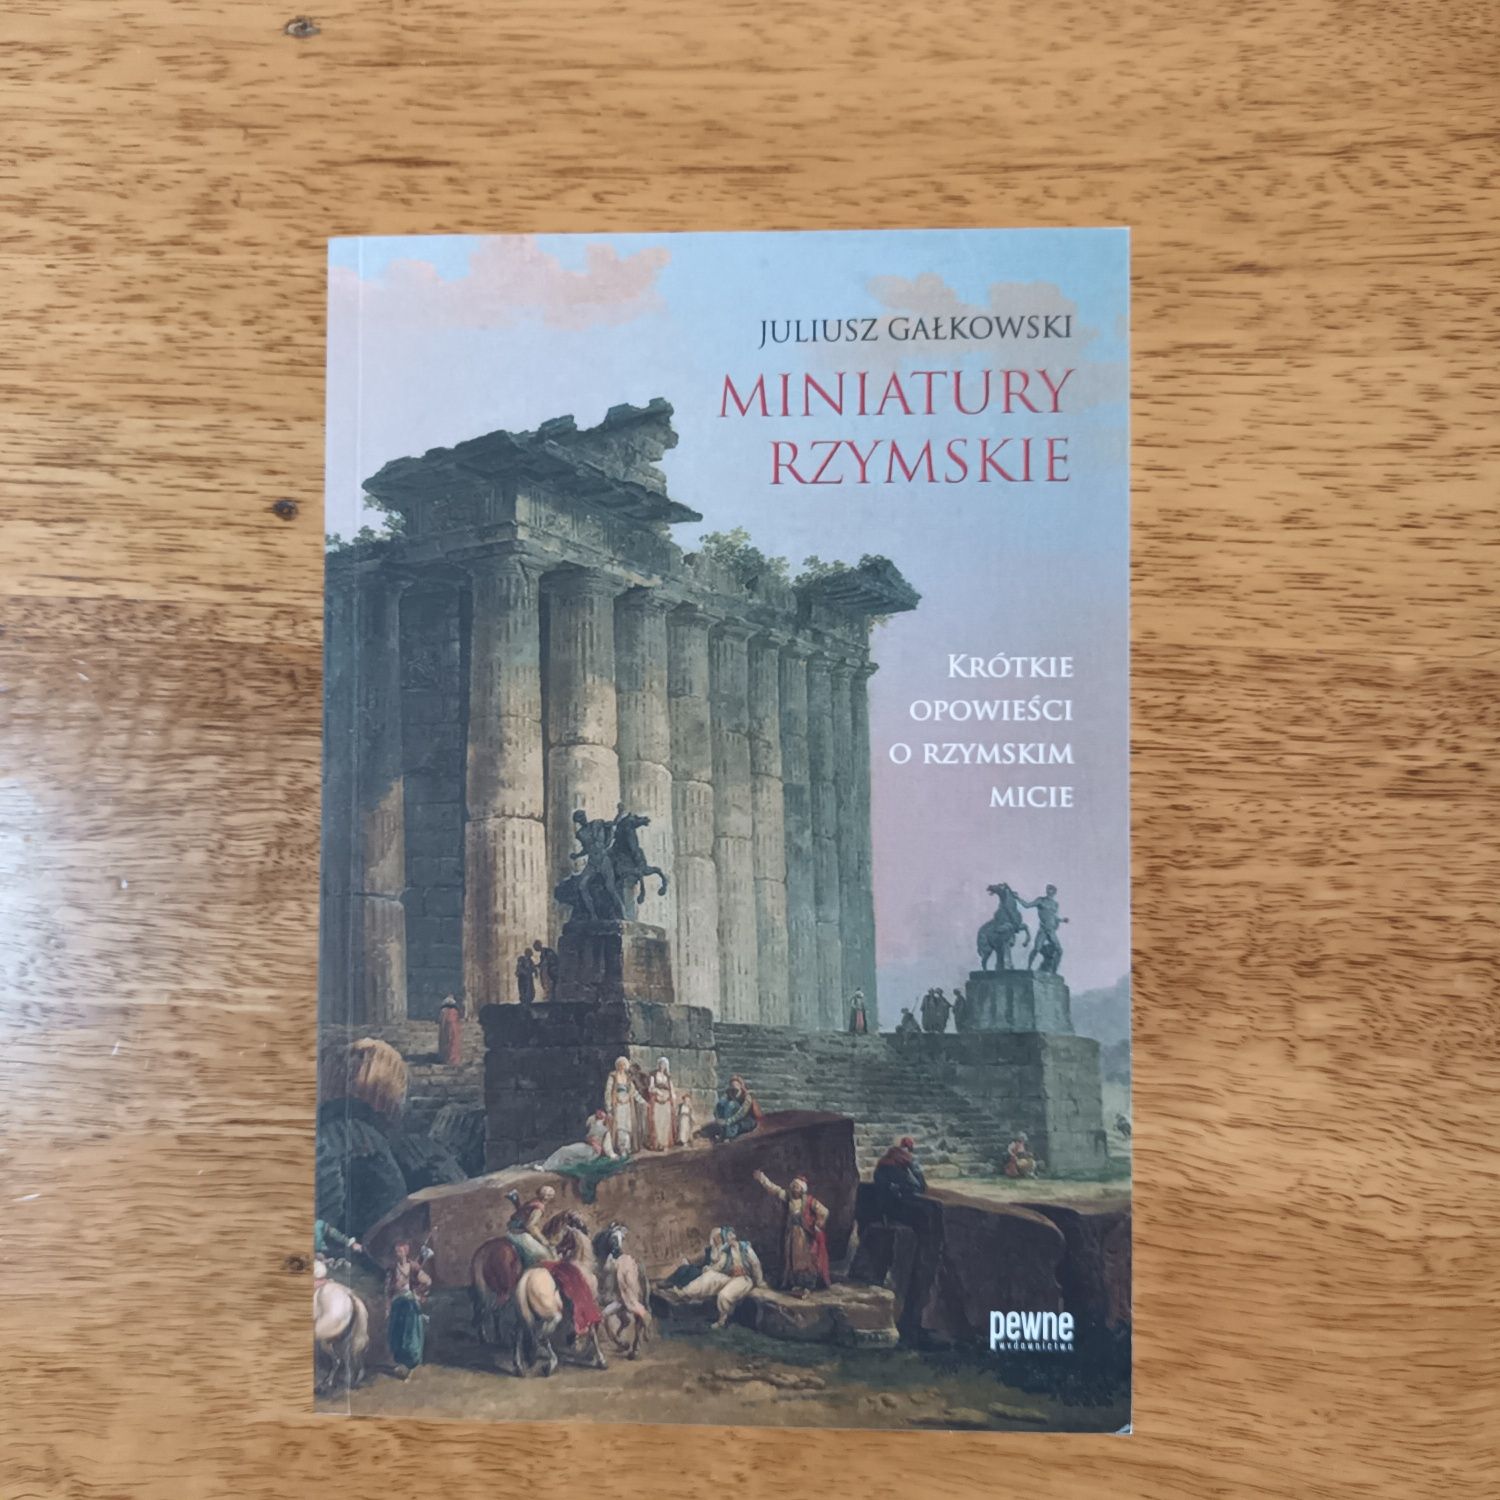 Juliusz Gałkowski  Miniatury rzymskie  krótkie opowieści o rzymskim